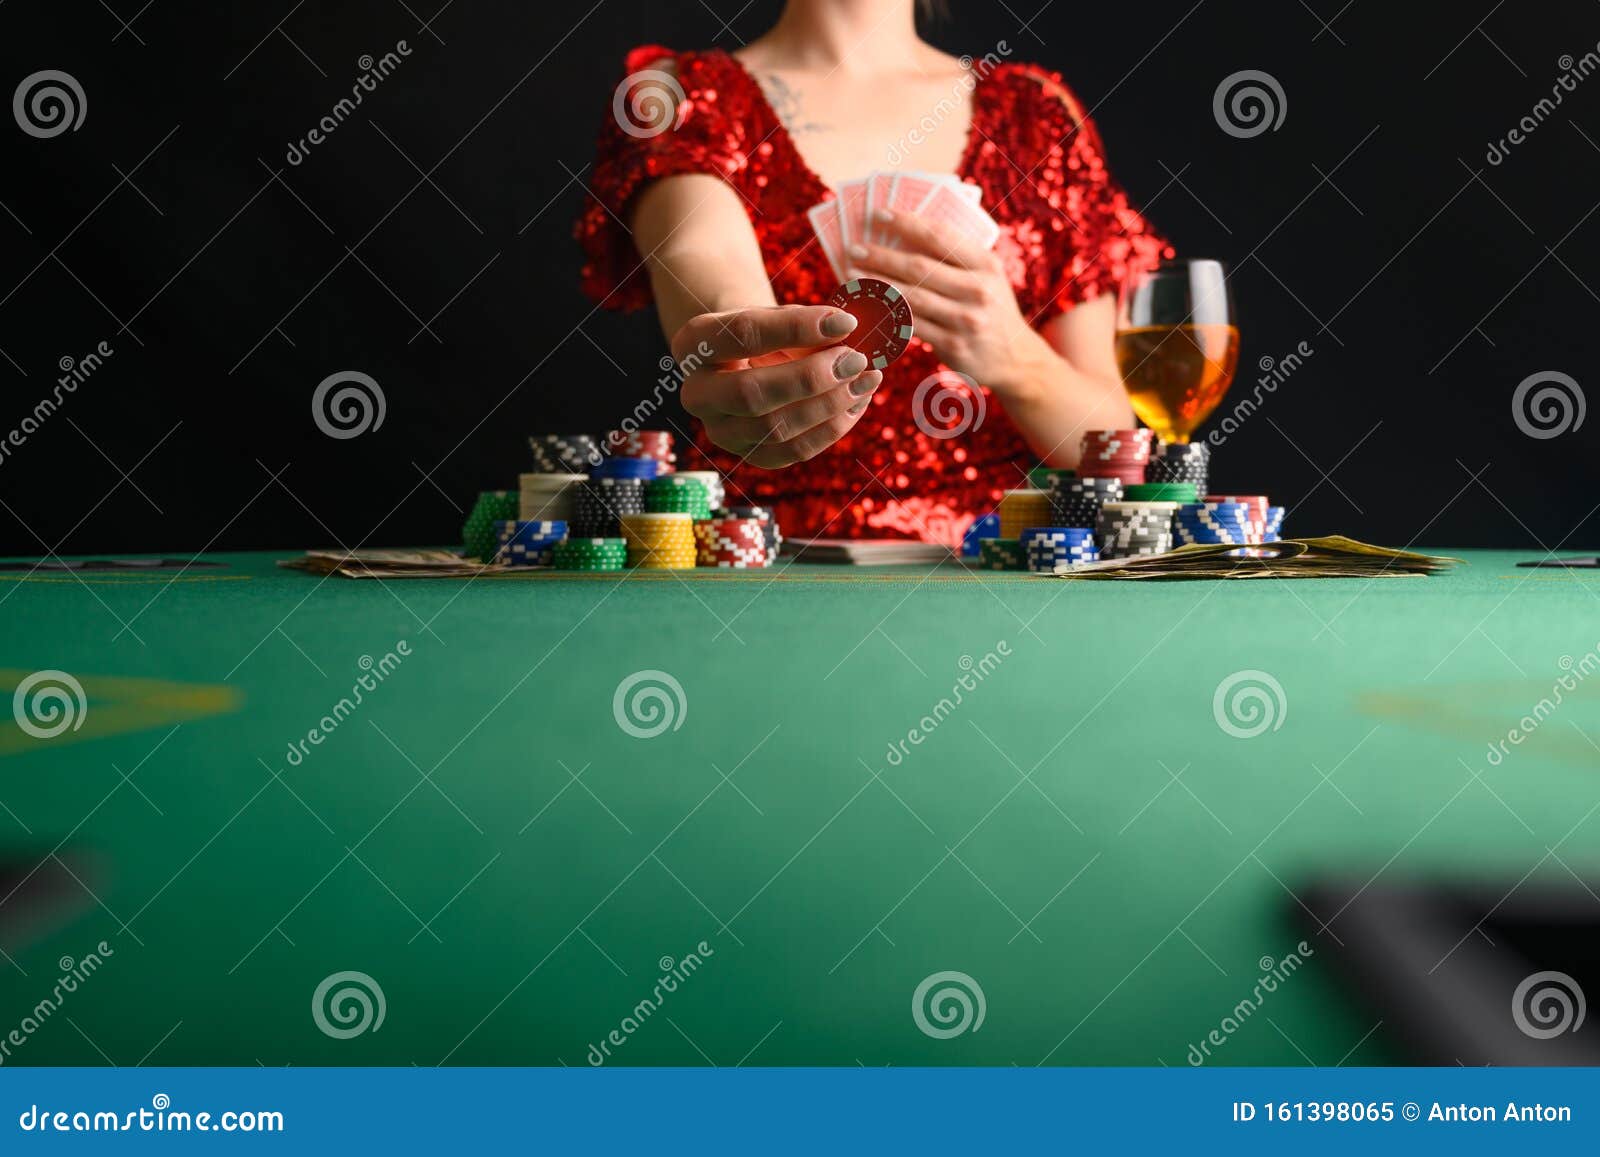 фото девушка играет в карты